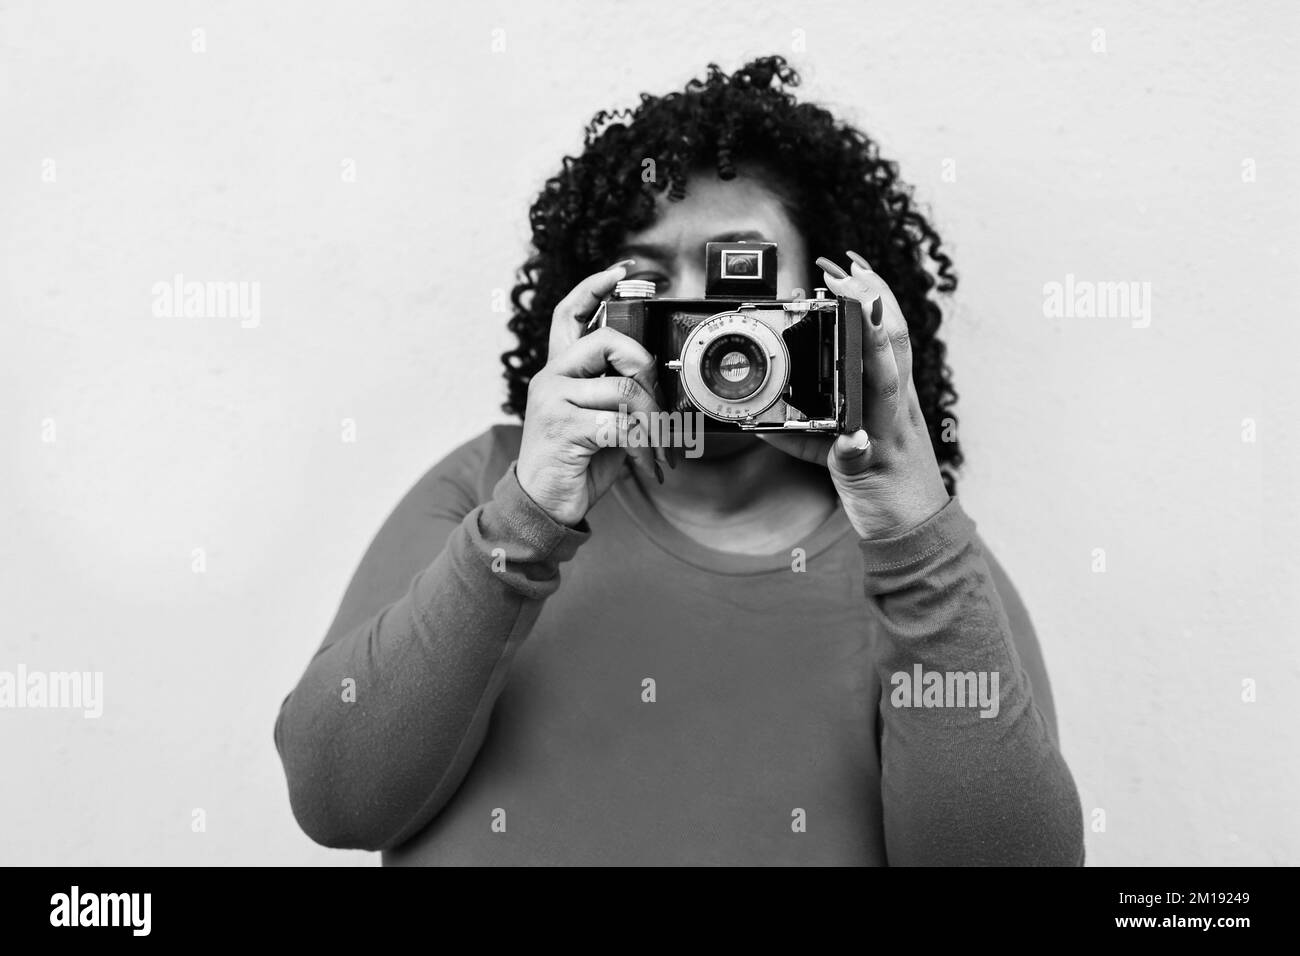 Kurvige afrikanische Frau, die im Freien eine Oldtimer-Kamera verwendet – Fokus auf das Fotoobjektiv – Schwarz-Weiß-Bearbeitung Stockfoto